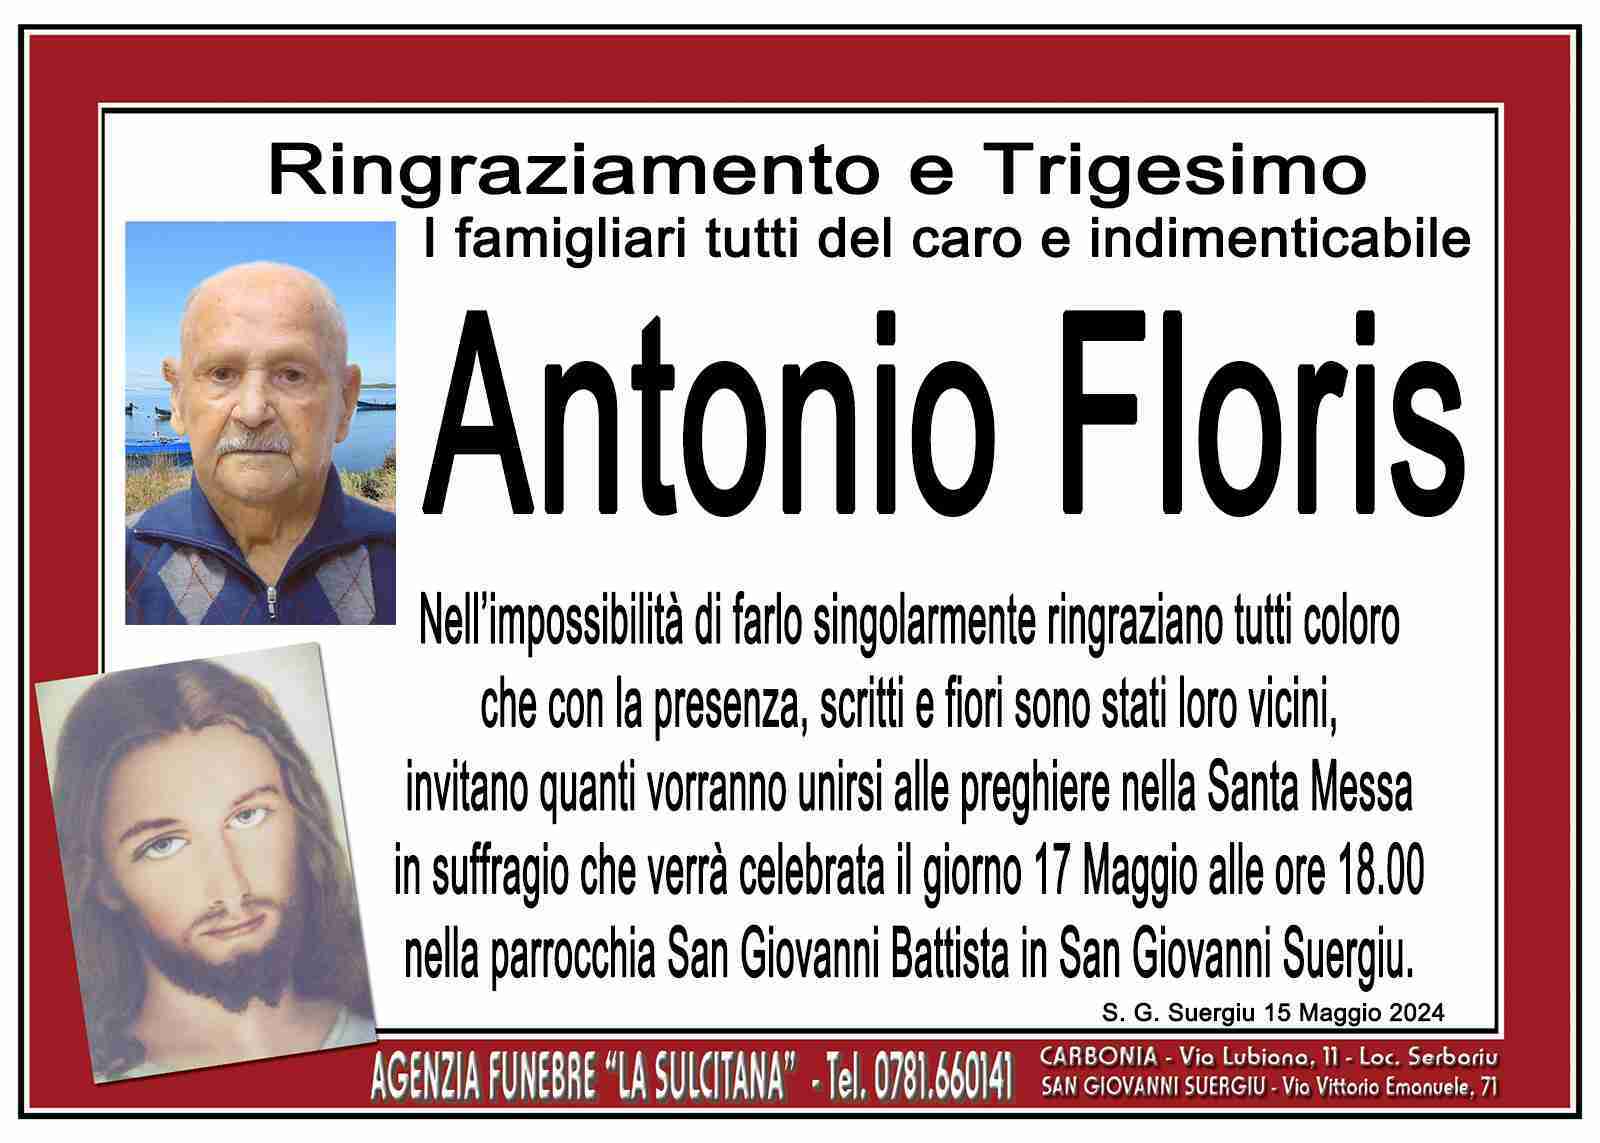 Antonio Floris